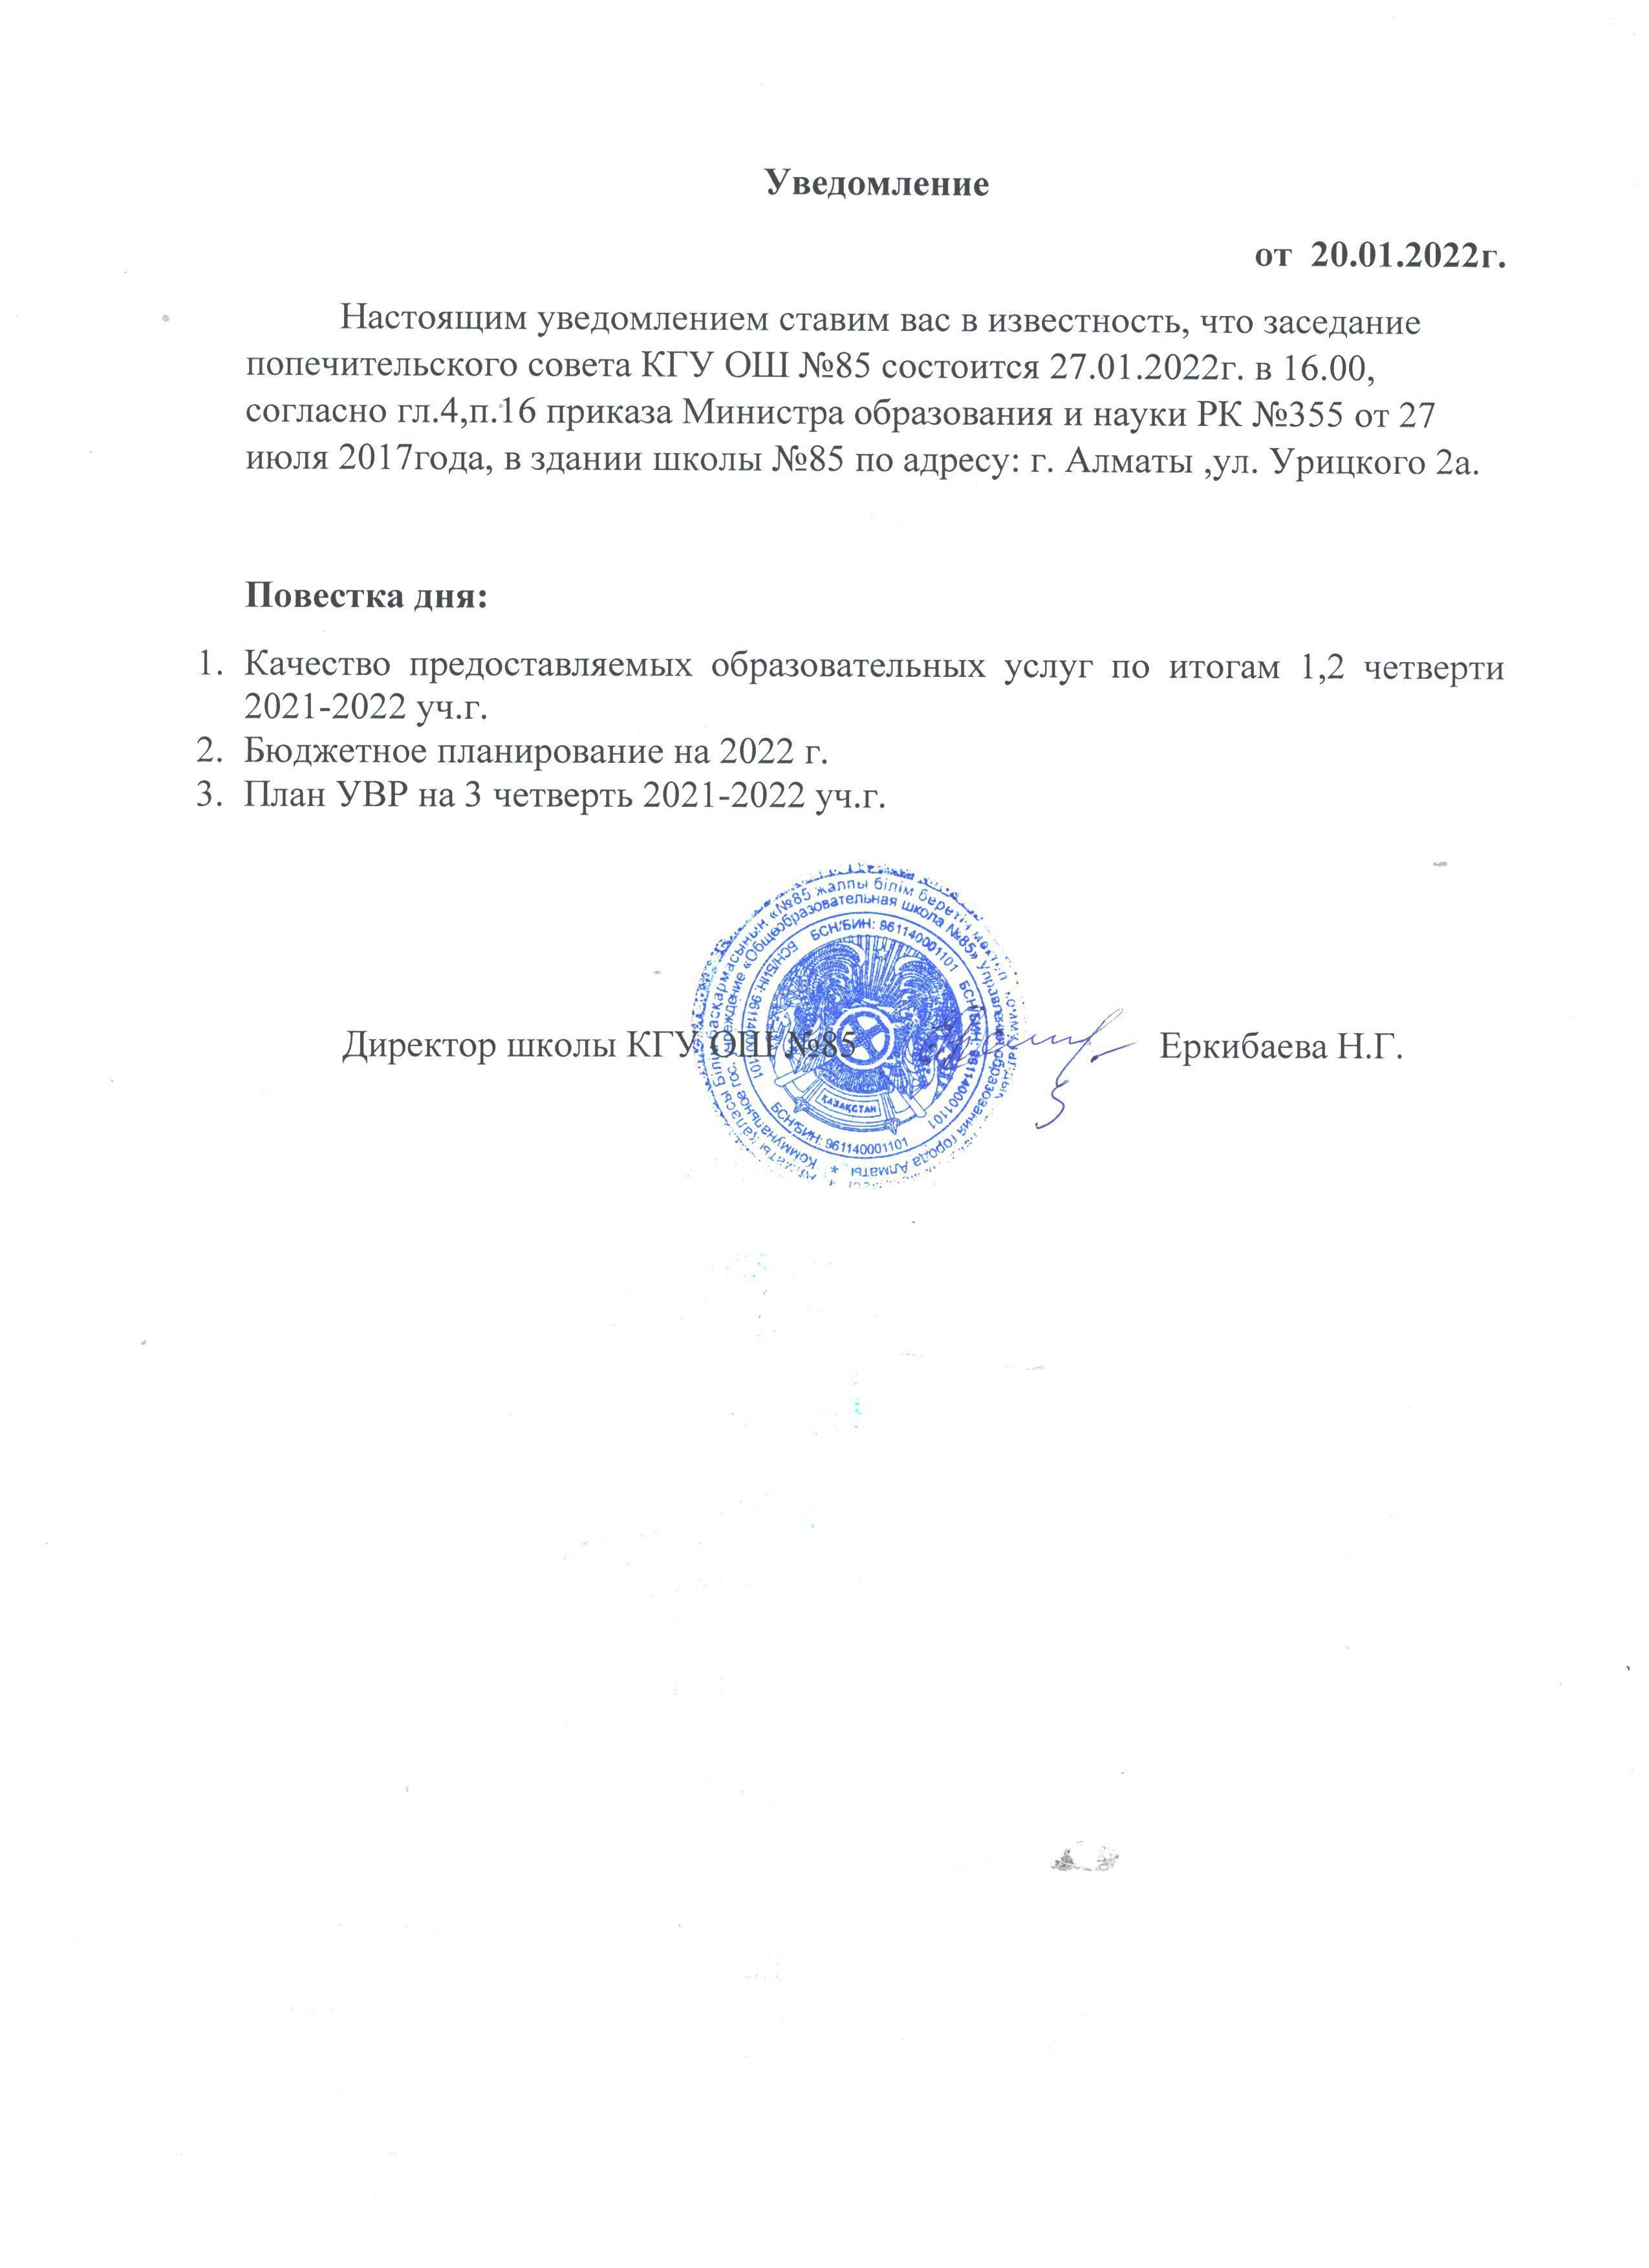 Уведомление о созыве заседания попечительского совета 27.01.2022г.